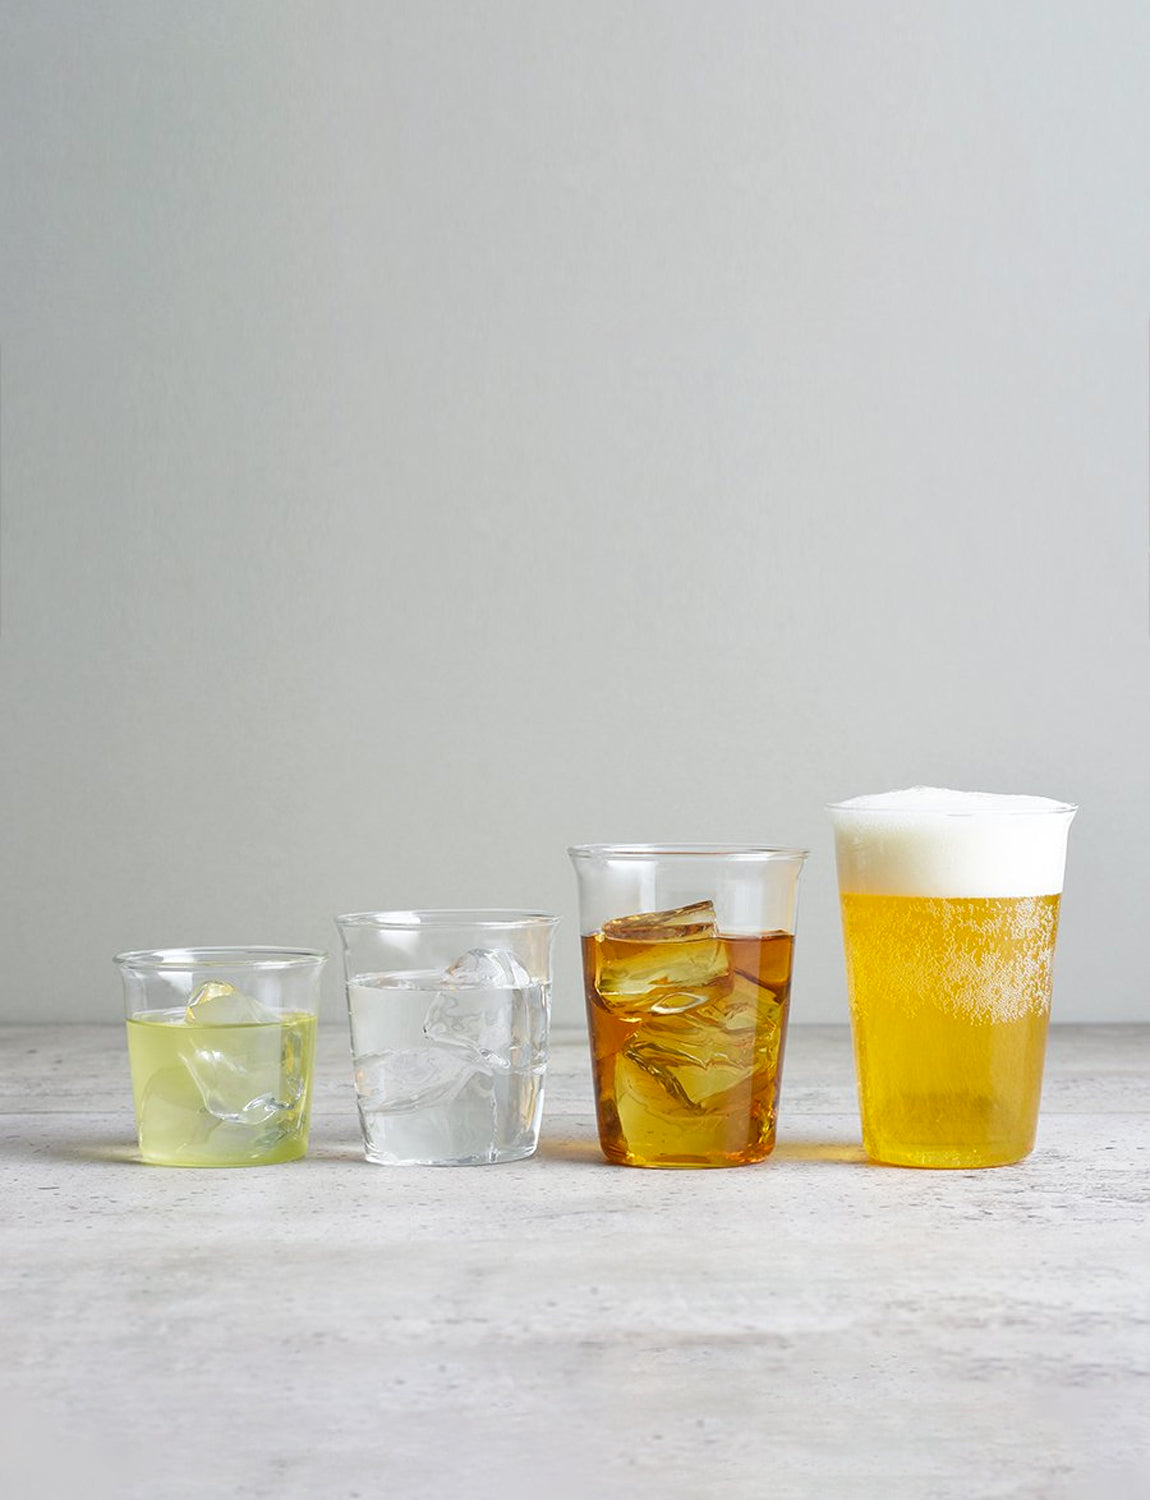 Kinto Cast Iced Tea Glass 350ml / 12oz